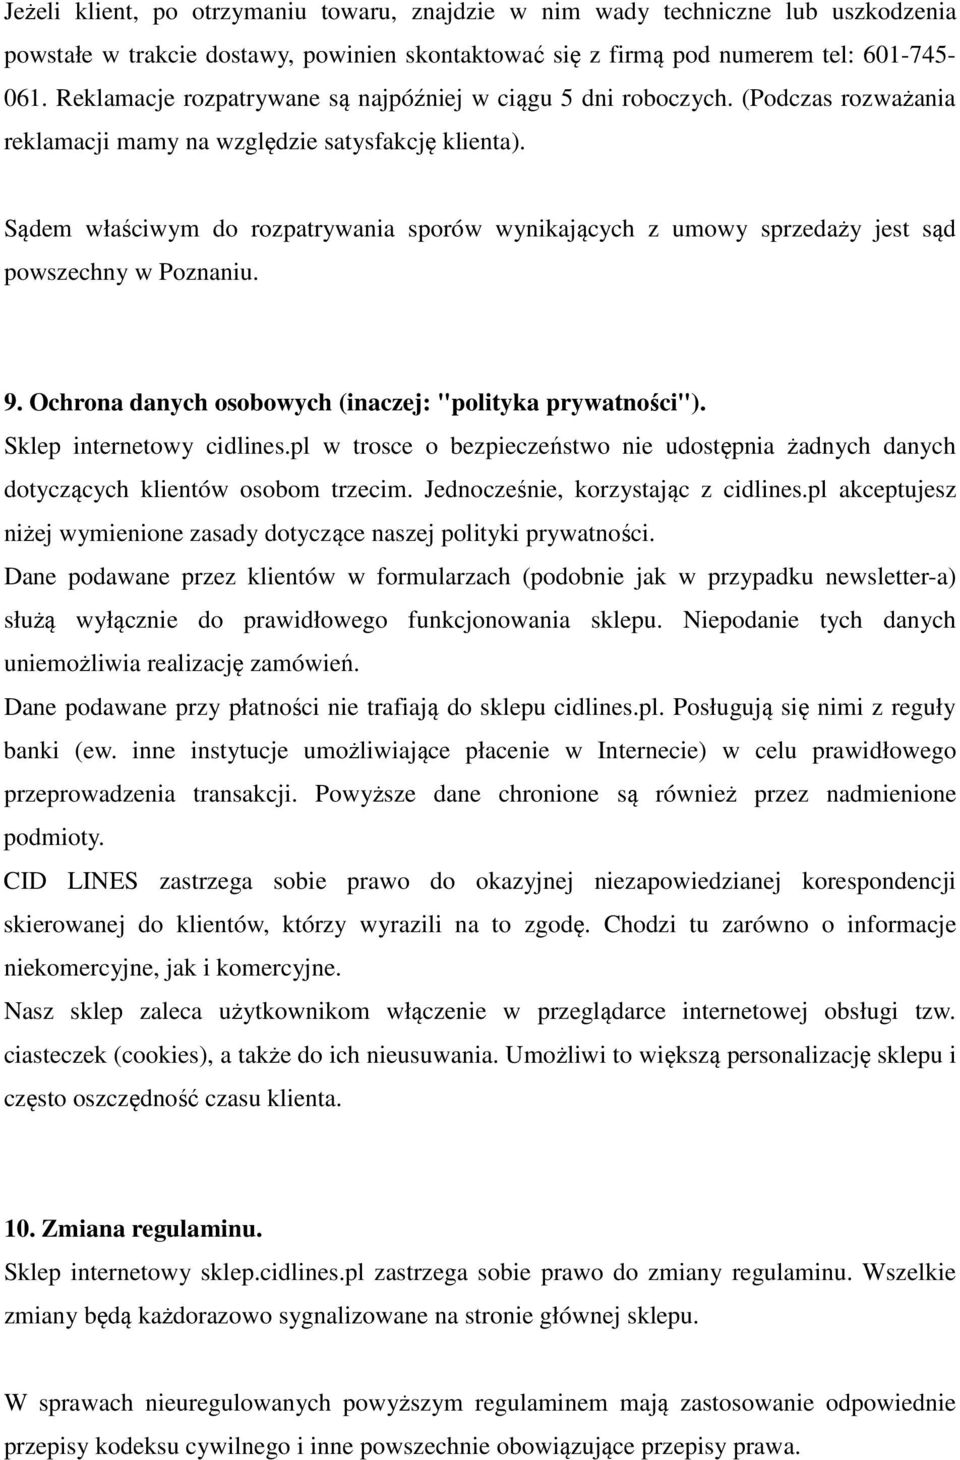 Sądem właściwym do rozpatrywania sporów wynikających z umowy sprzedaży jest sąd powszechny w Poznaniu. 9. Ochrona danych osobowych (inaczej: "polityka prywatności"). Sklep internetowy cidlines.